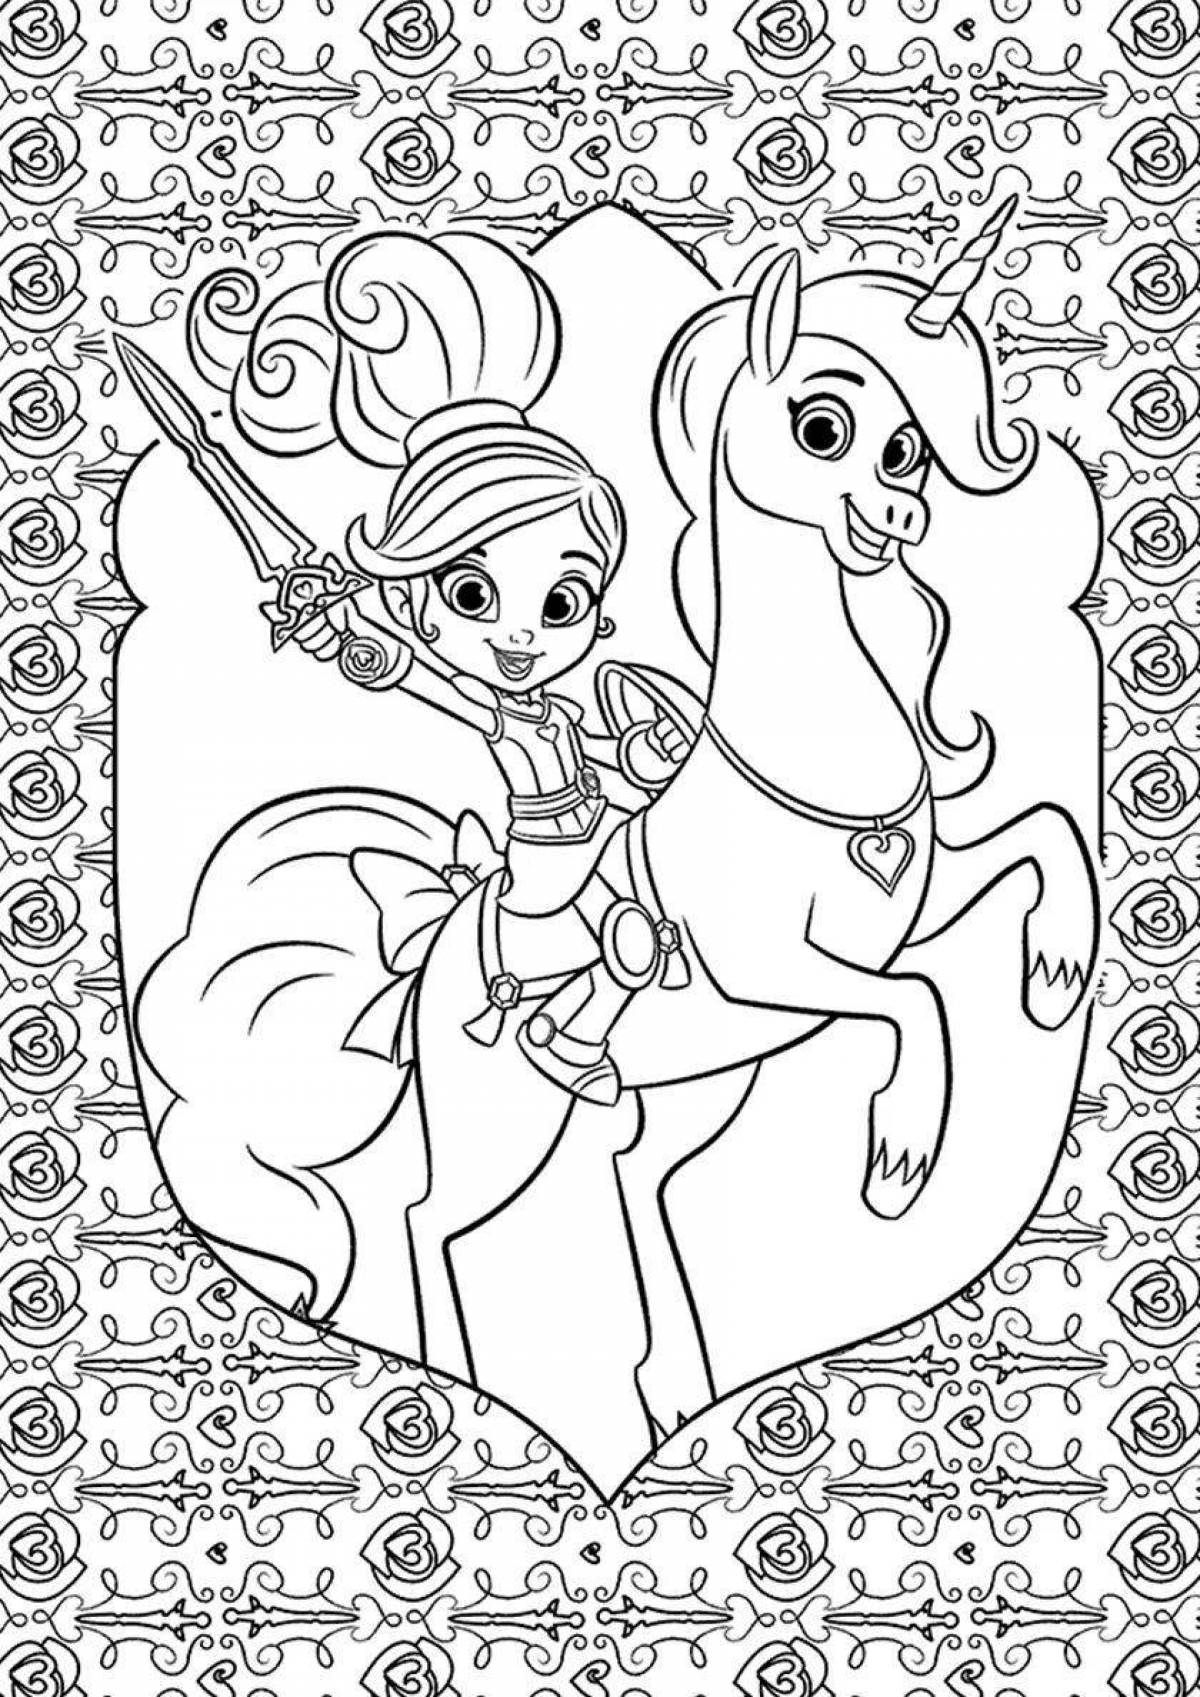 Exquisite enchantimals unicorn coloring book